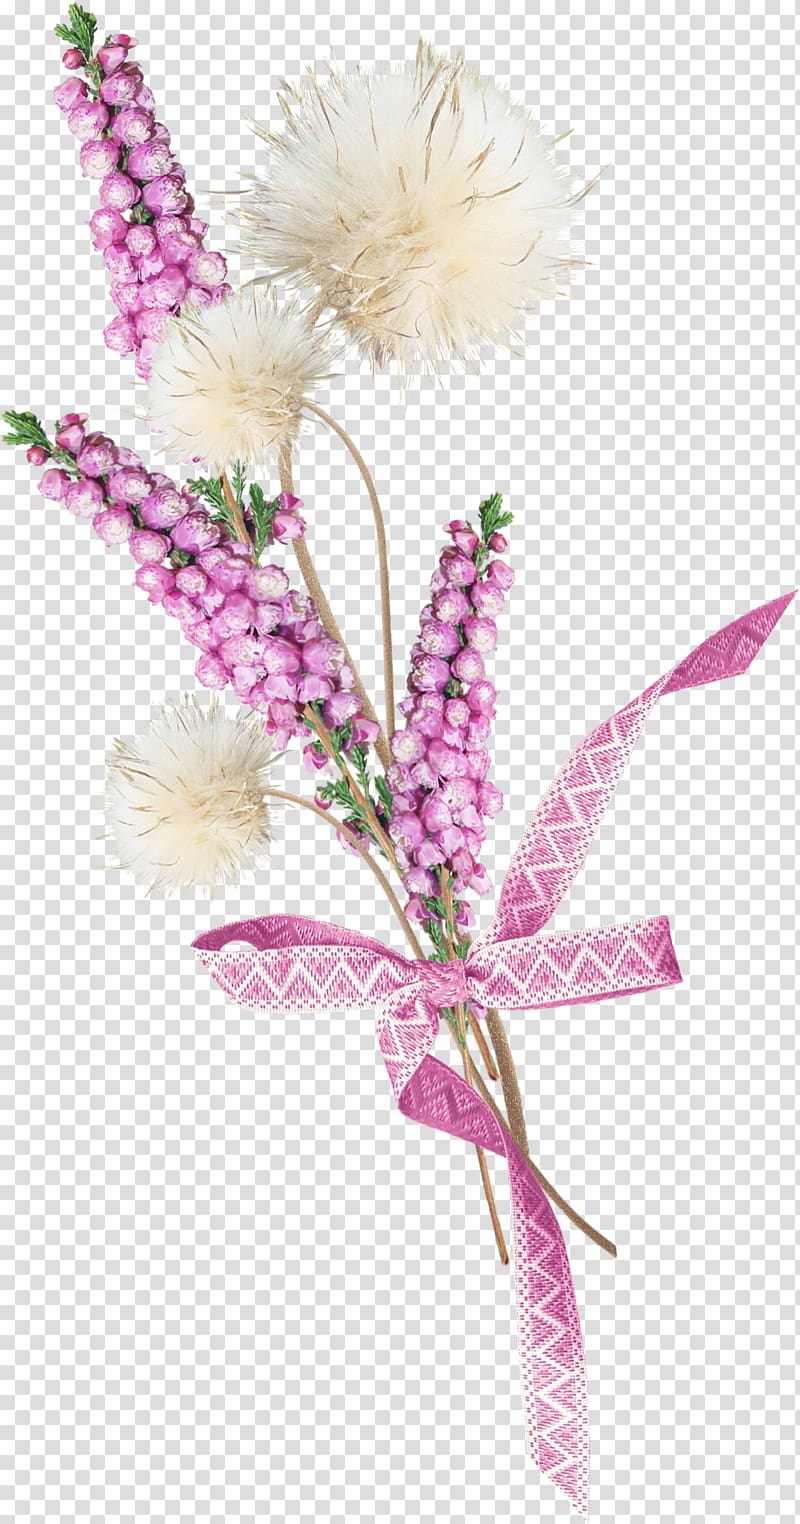 Baku Flower Festival Vecteur Watercolor painting, lavender transparent background PNG clipart